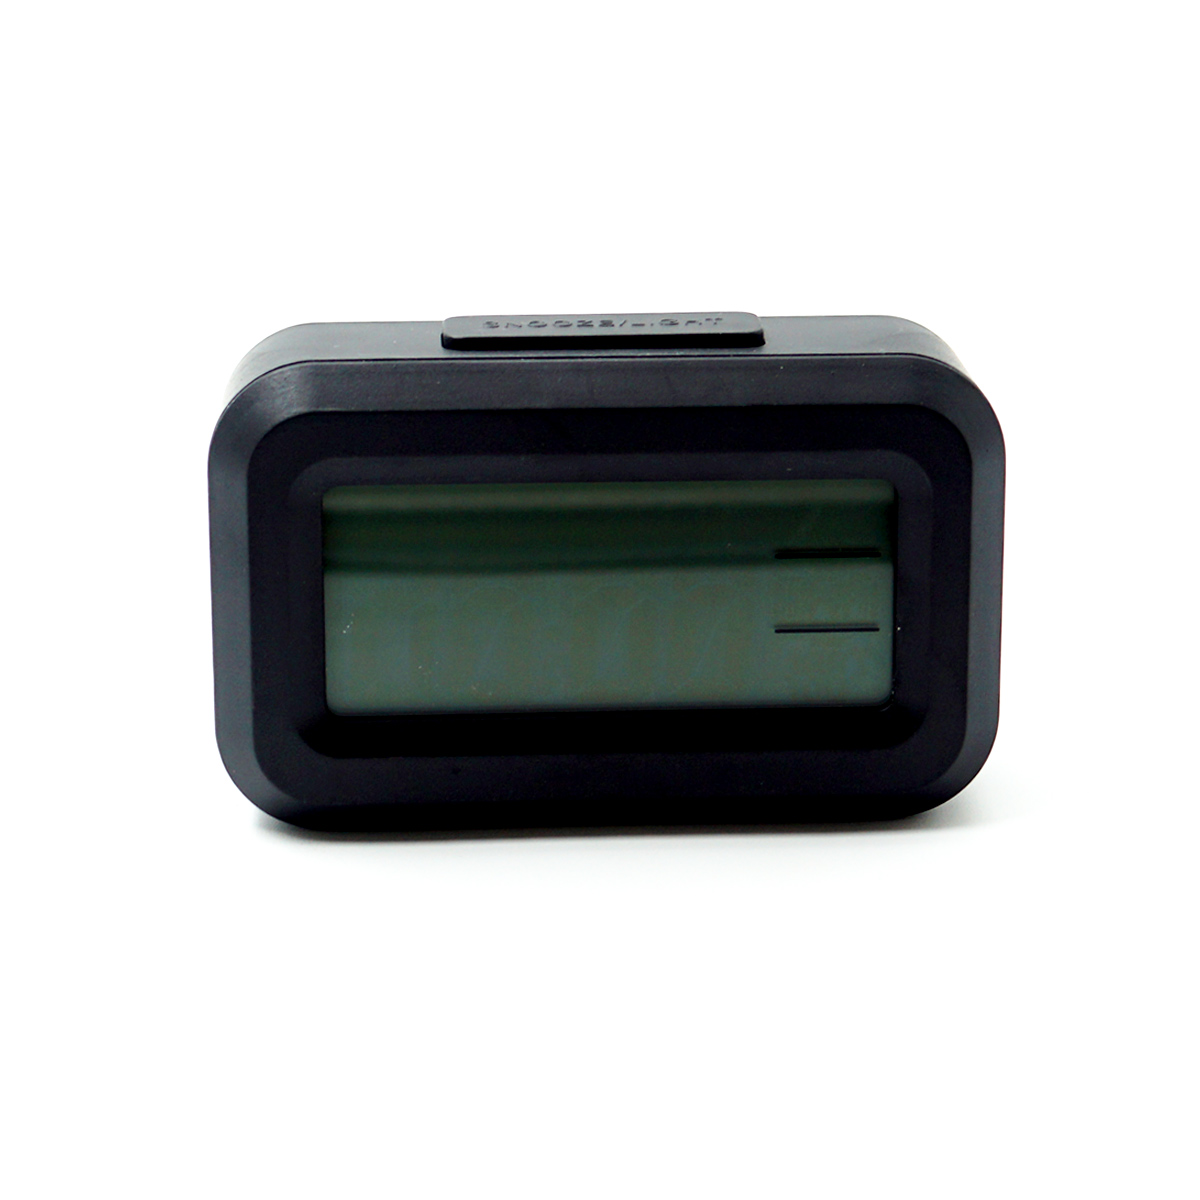 penhouse.in DOL-2108 Black Color Mini Digital Alarm Clock SKU 96618